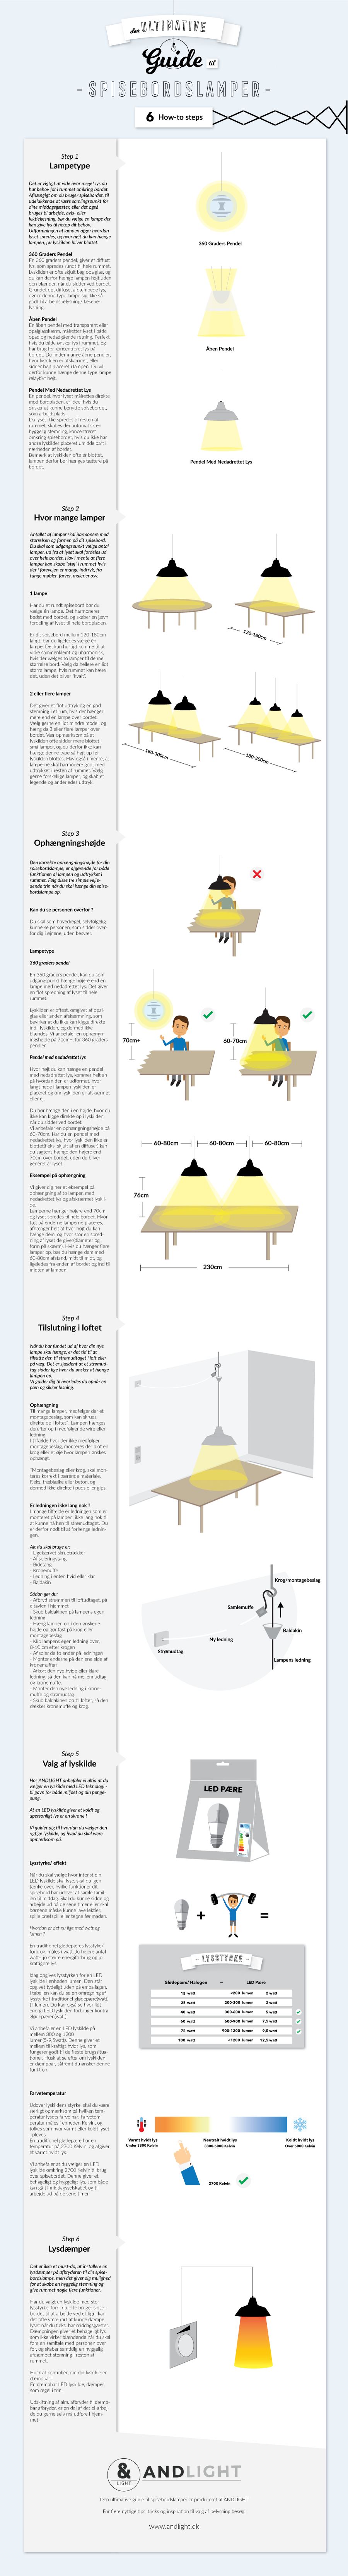 Hvordan hænger man en lampe over spisebordet guide